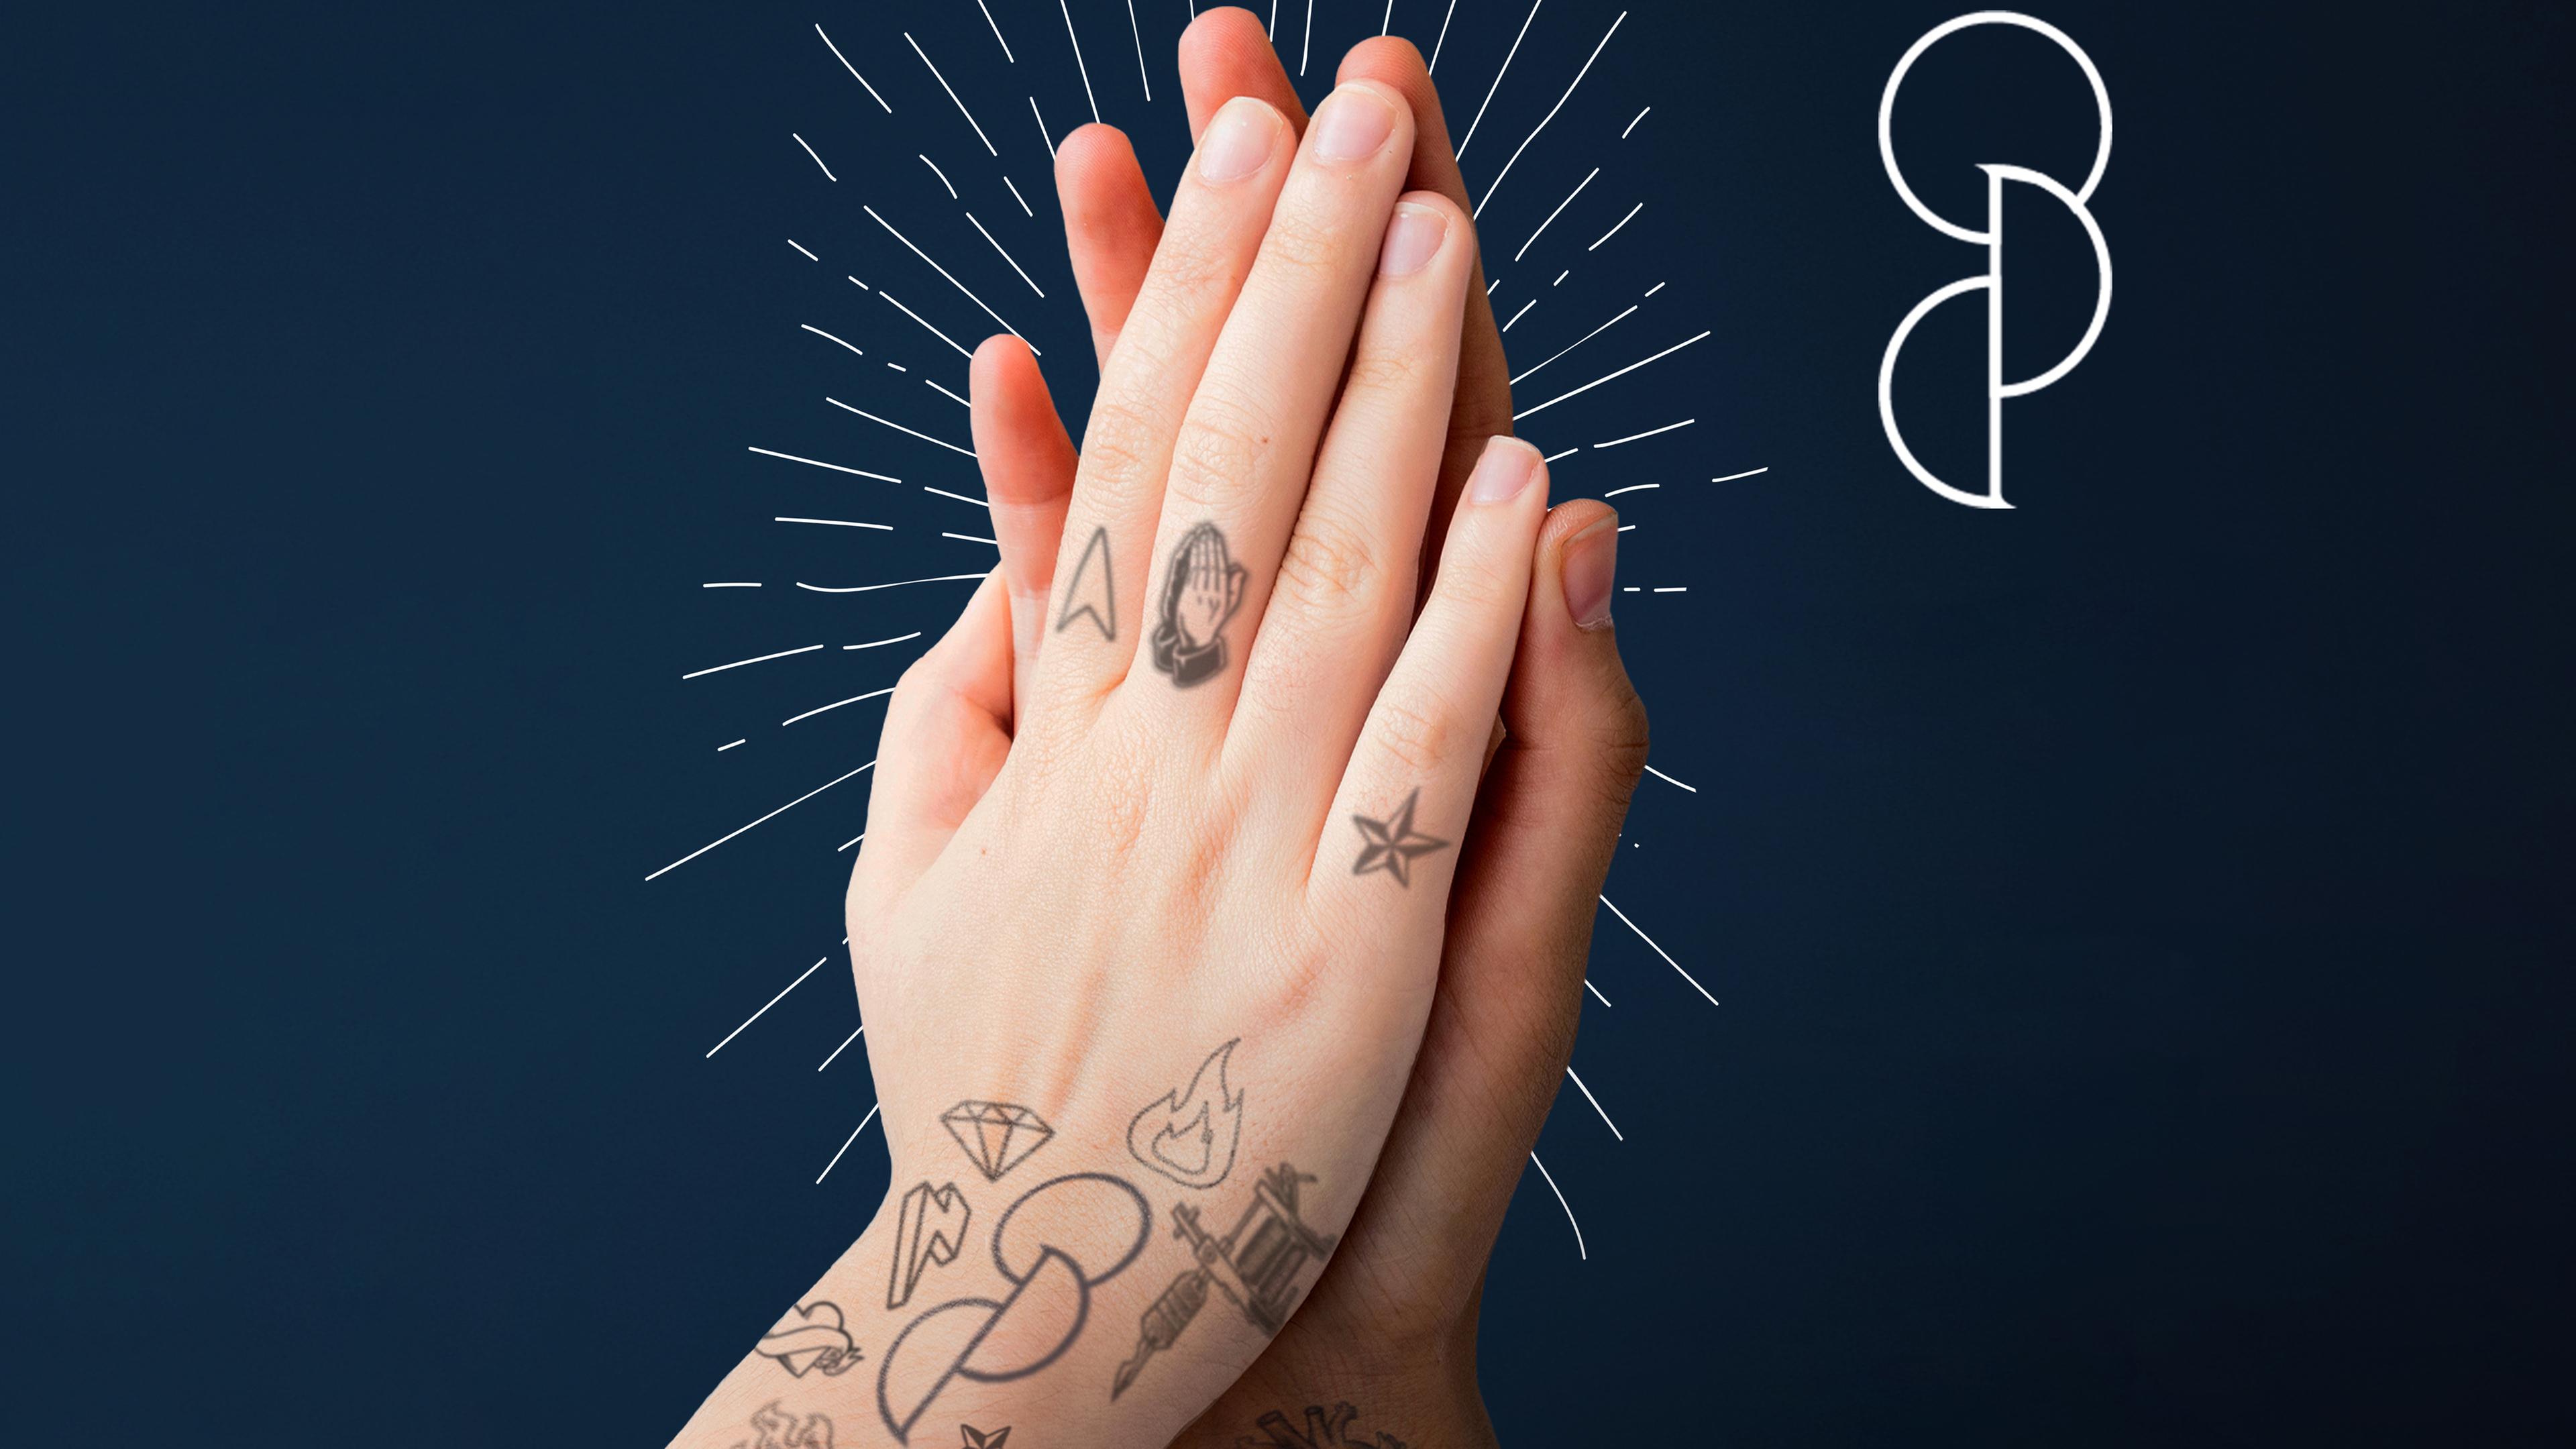 Ein Tattoo als Lebensretter: Ein Kreis und zwei Halbkreise darunter symbolisieren die Bereitschaft zur Organspende.